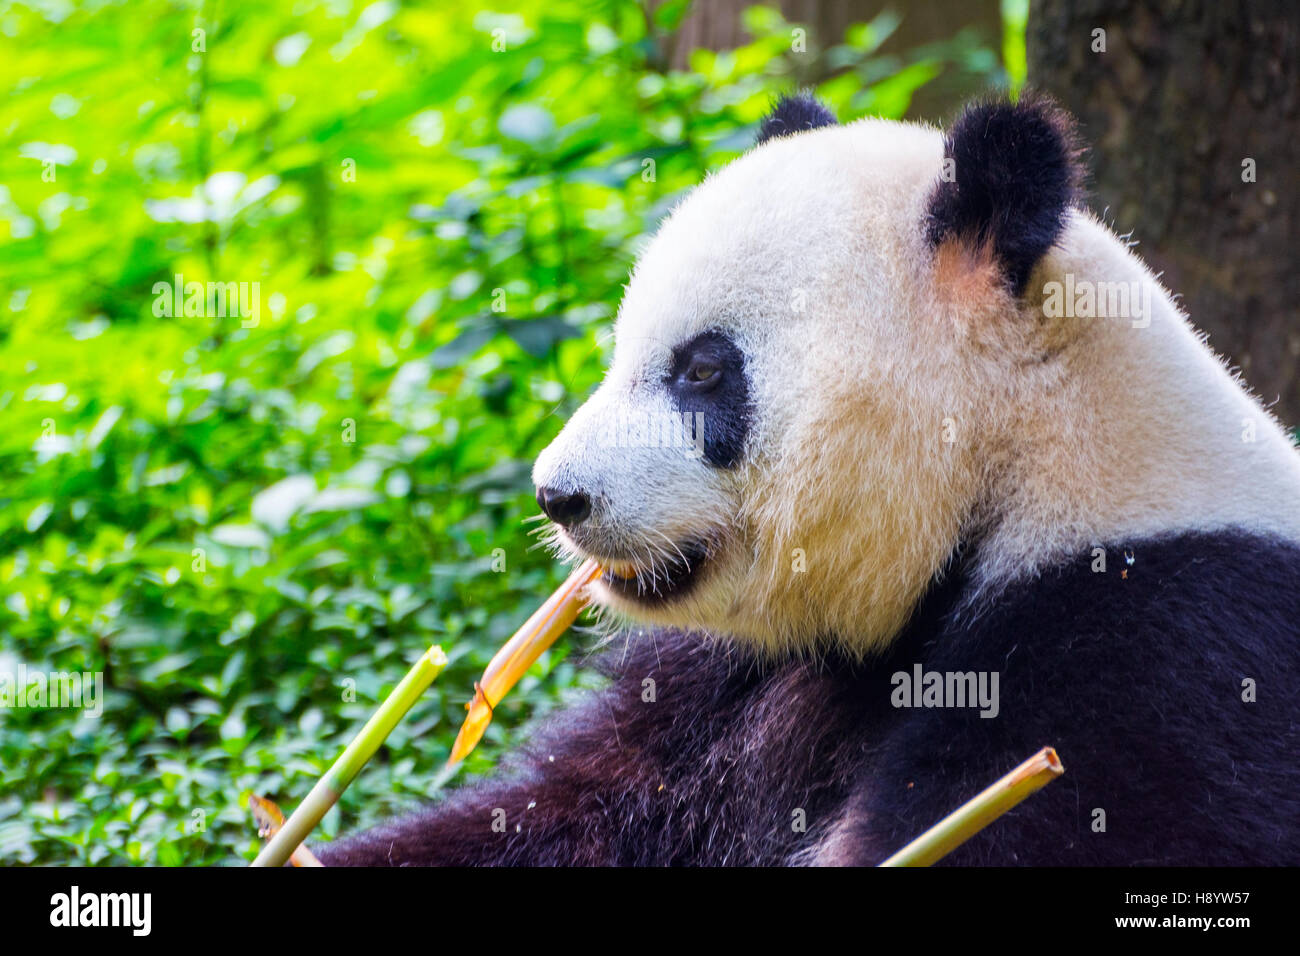 Oso Panda gigante (Ailuropoda melanoleuca), sentarse y comer Bambú fresco Foto de stock